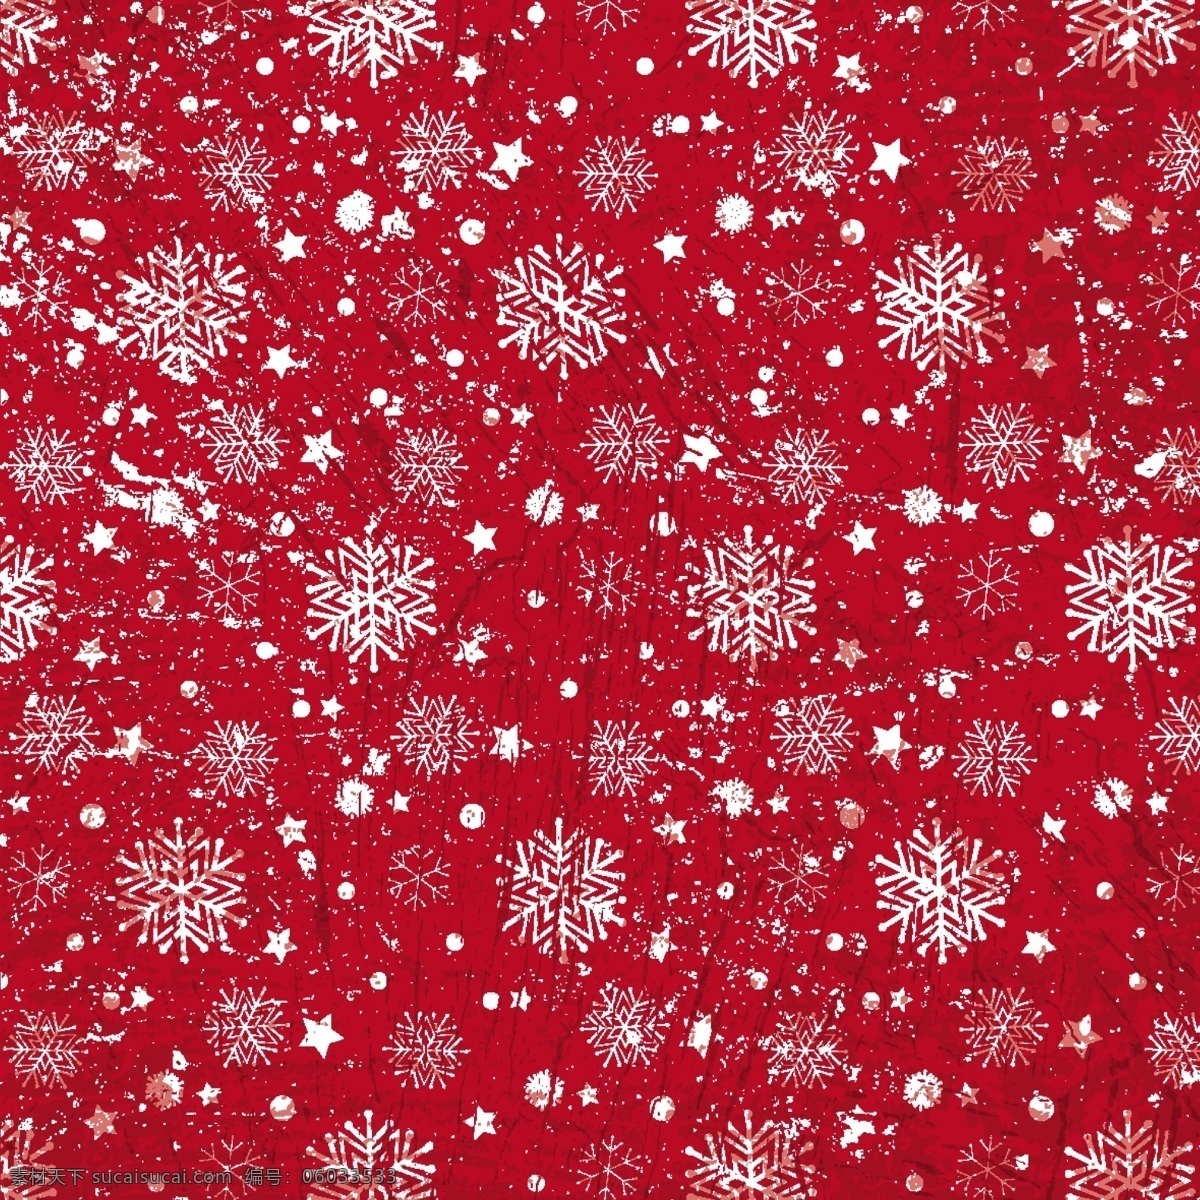 一个 红色 背景 上 纹理 snoflakes 图案 雪 圣诞节 圣诞快乐 冬天 圣诞 红色背景 庆祝节日 圣诞节的雪花 背景图案 冷 冬天的背景 纹理背景 季节的问候